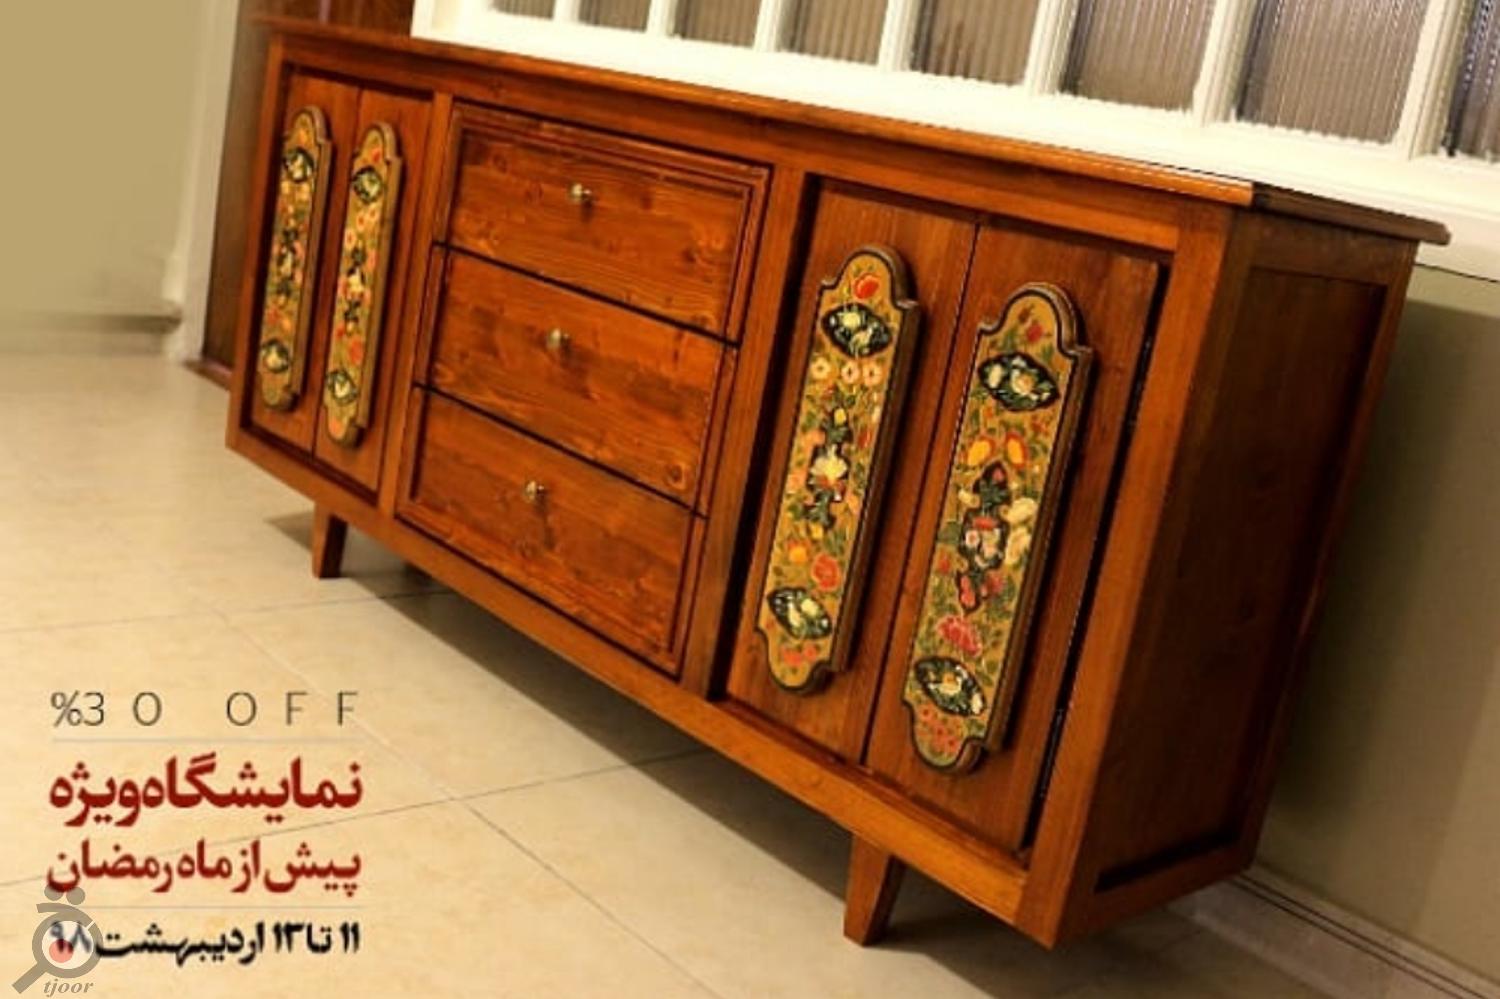 نمایشگاه ویژه محصولات چوبی خورشید تا قبل از ماه مبارک رمضان